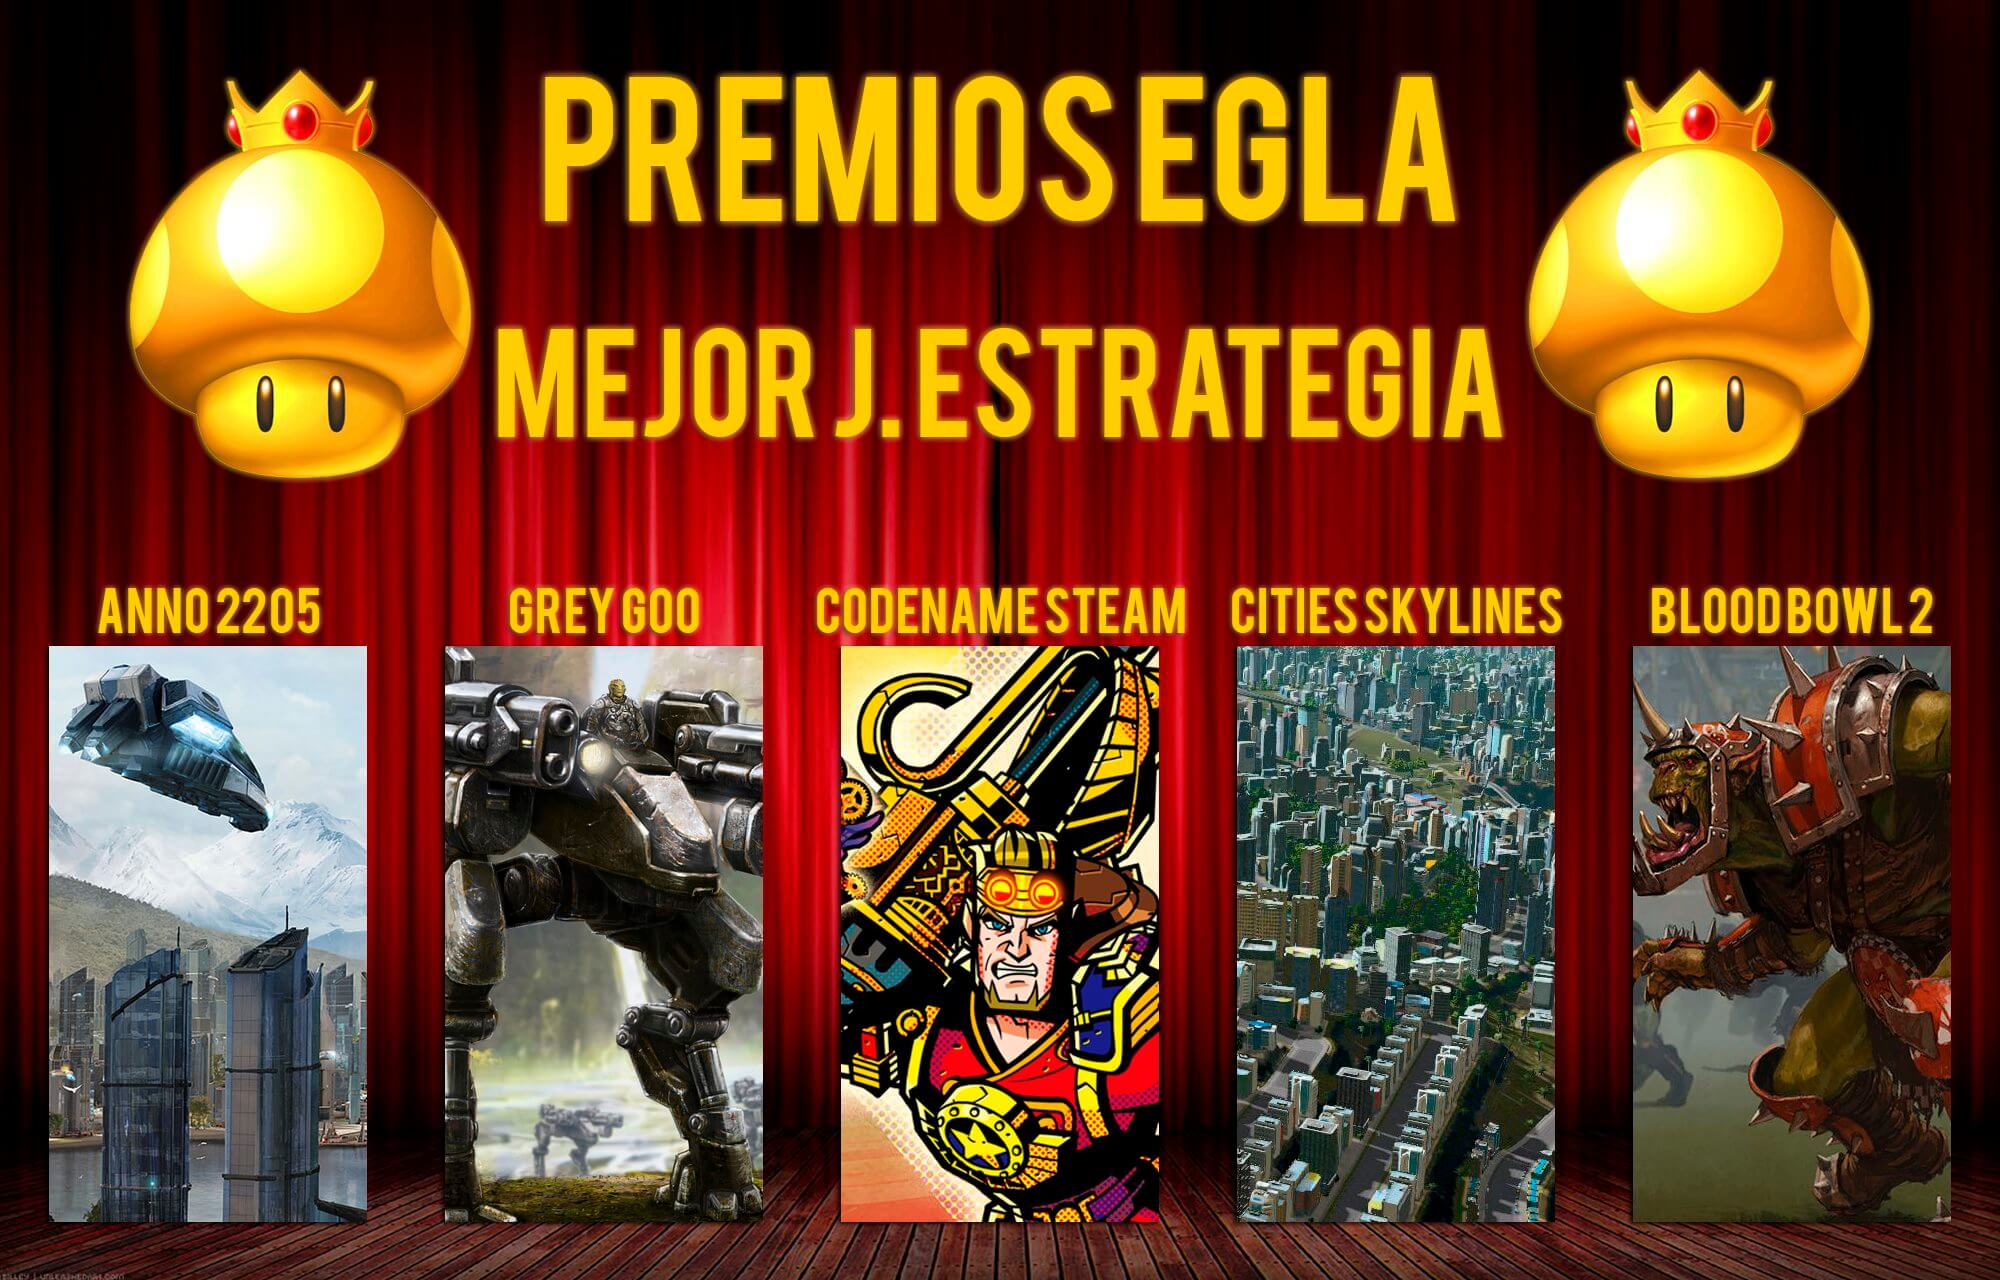 Premios EGLA 2015 Mejor juego de estrategia